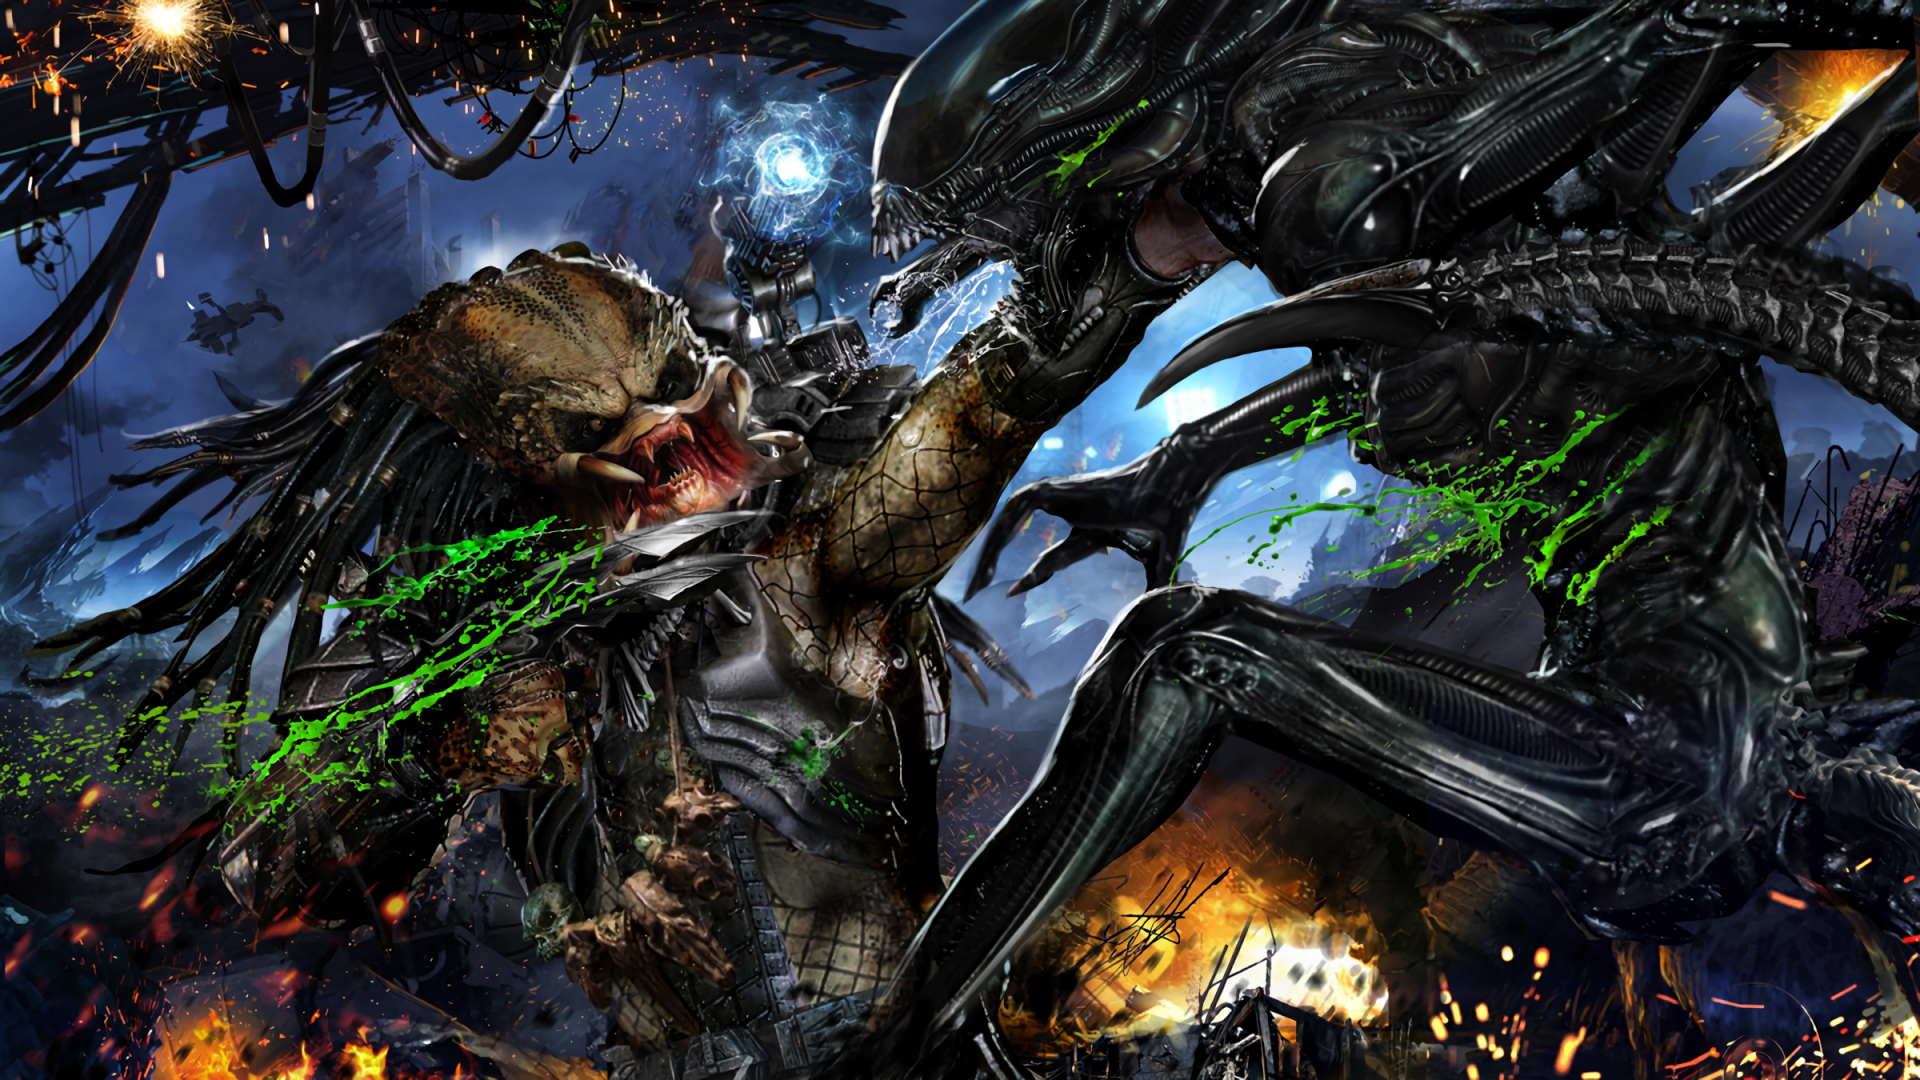 Sci Fi Alien vs. Predator HD Wallpaper by John Gallagher